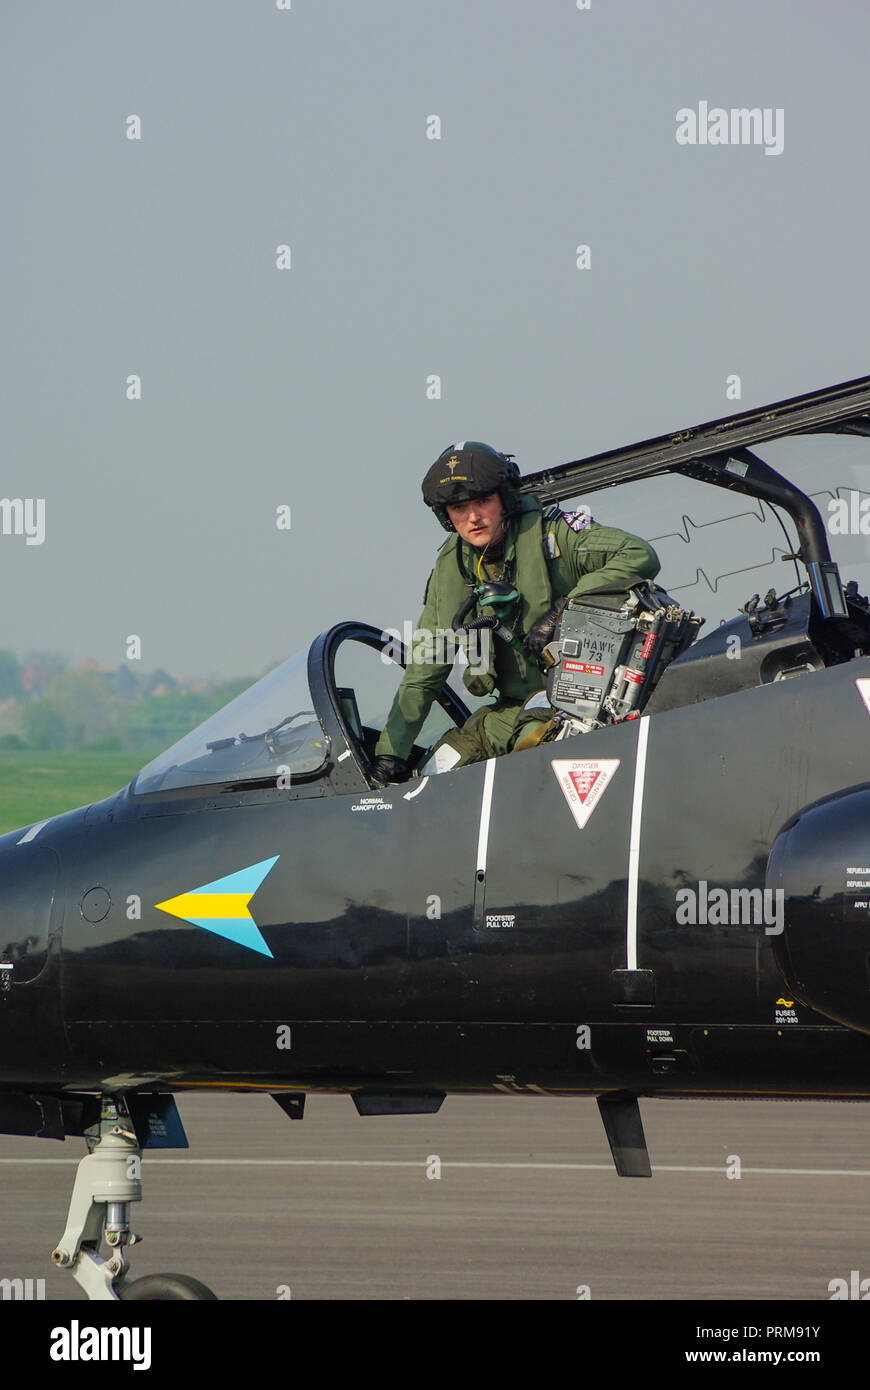 La RAF, il pilota di Hawk solista della Royal Air Force Matt Barker, che sale dalla cabina di pilotaggio di un jet-plane BAe Hawk T1. Tuta da volo. Tuta volante Foto Stock